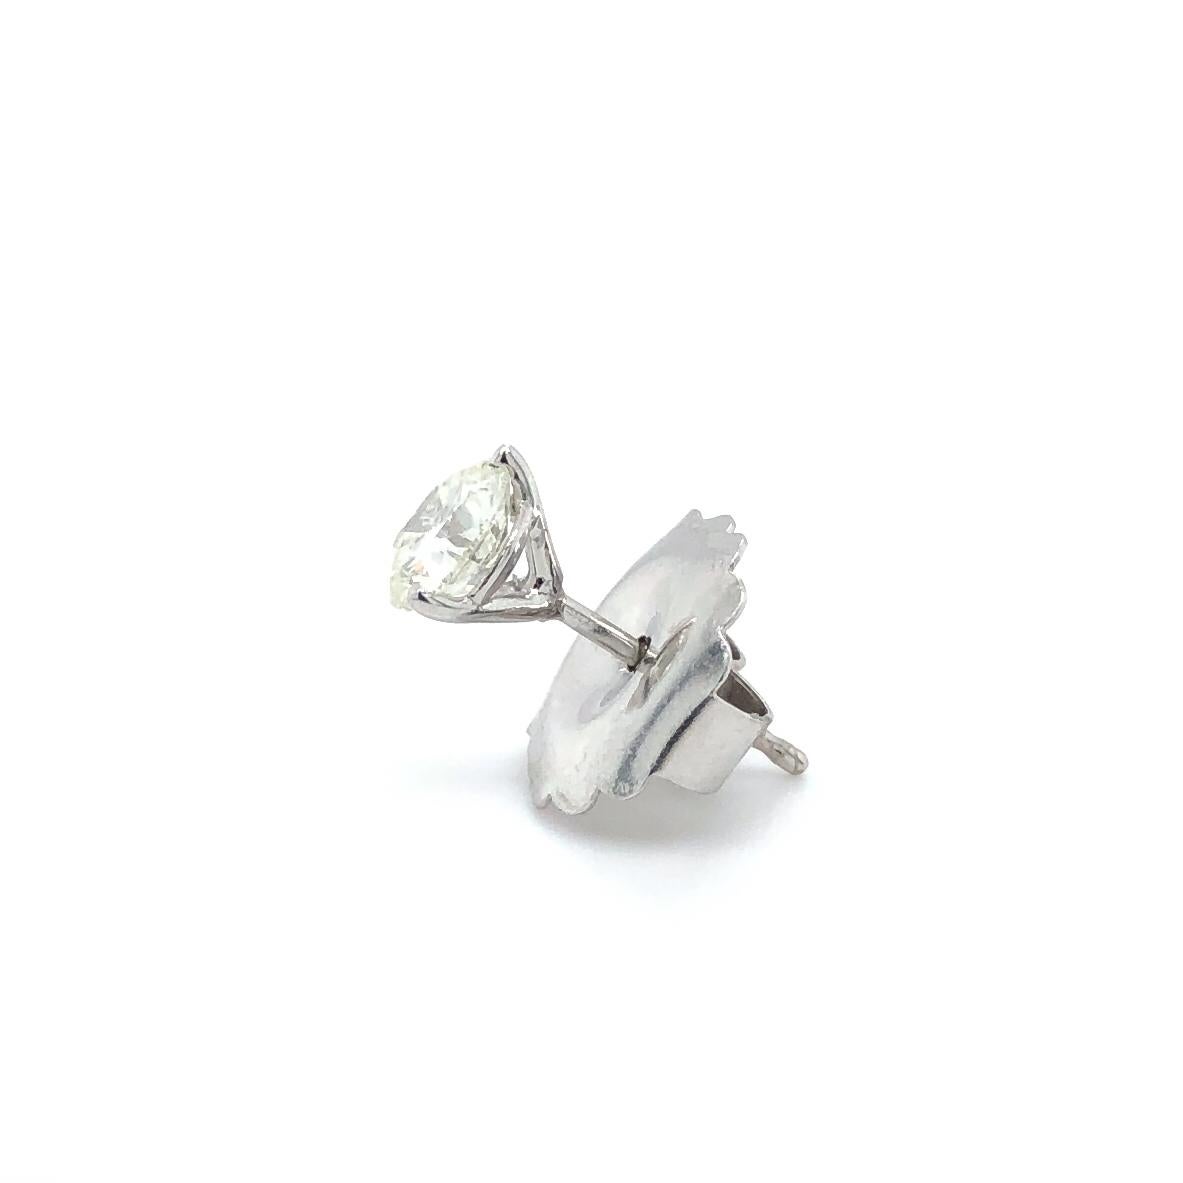 1 carat diamond earrings in ear